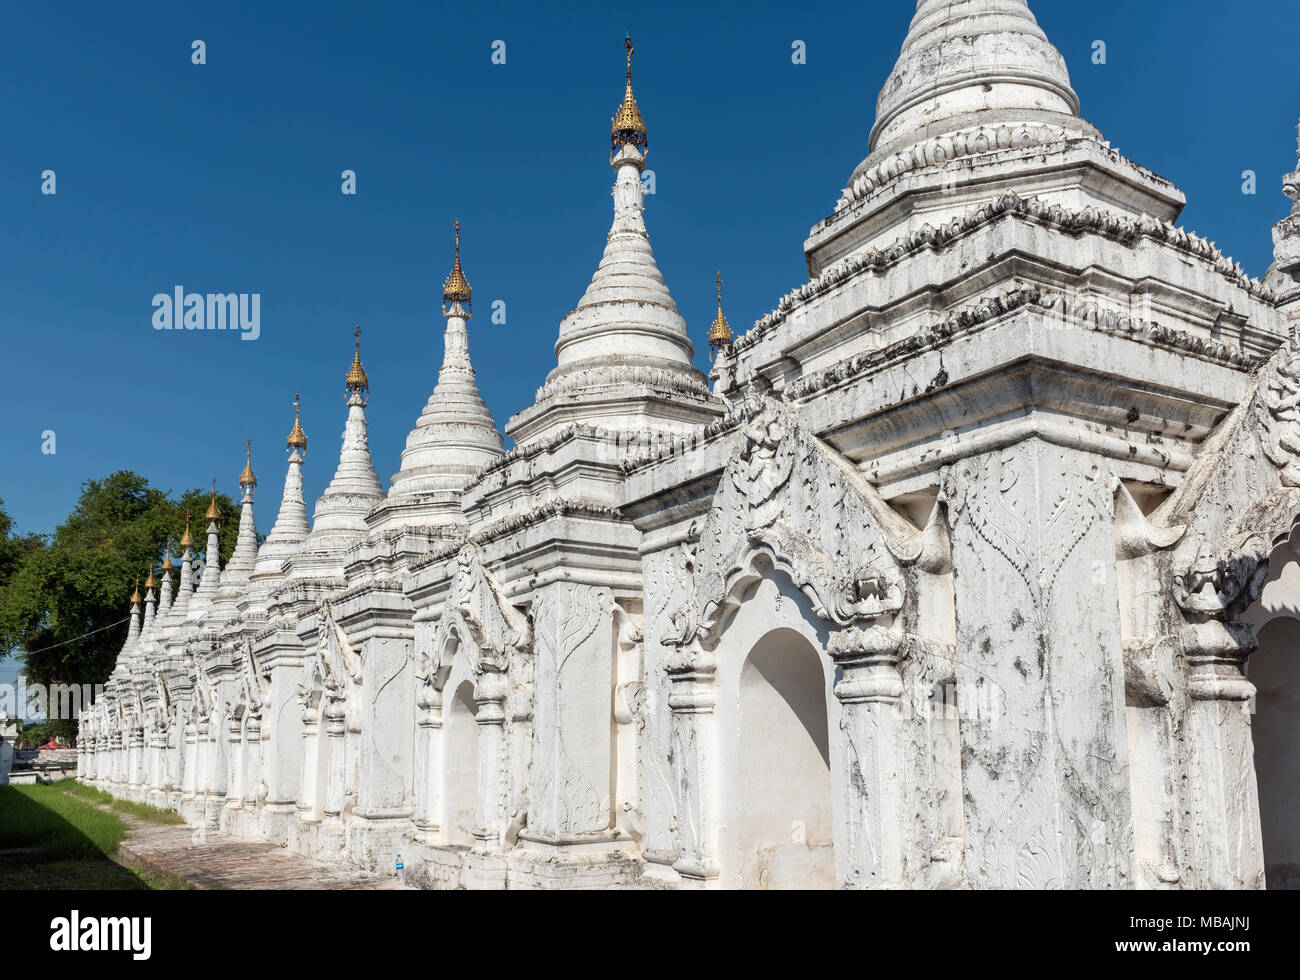 Las estupas blancas en la Pagoda Sandamuni, Mandalay, Birmania (Myanmar) Foto de stock